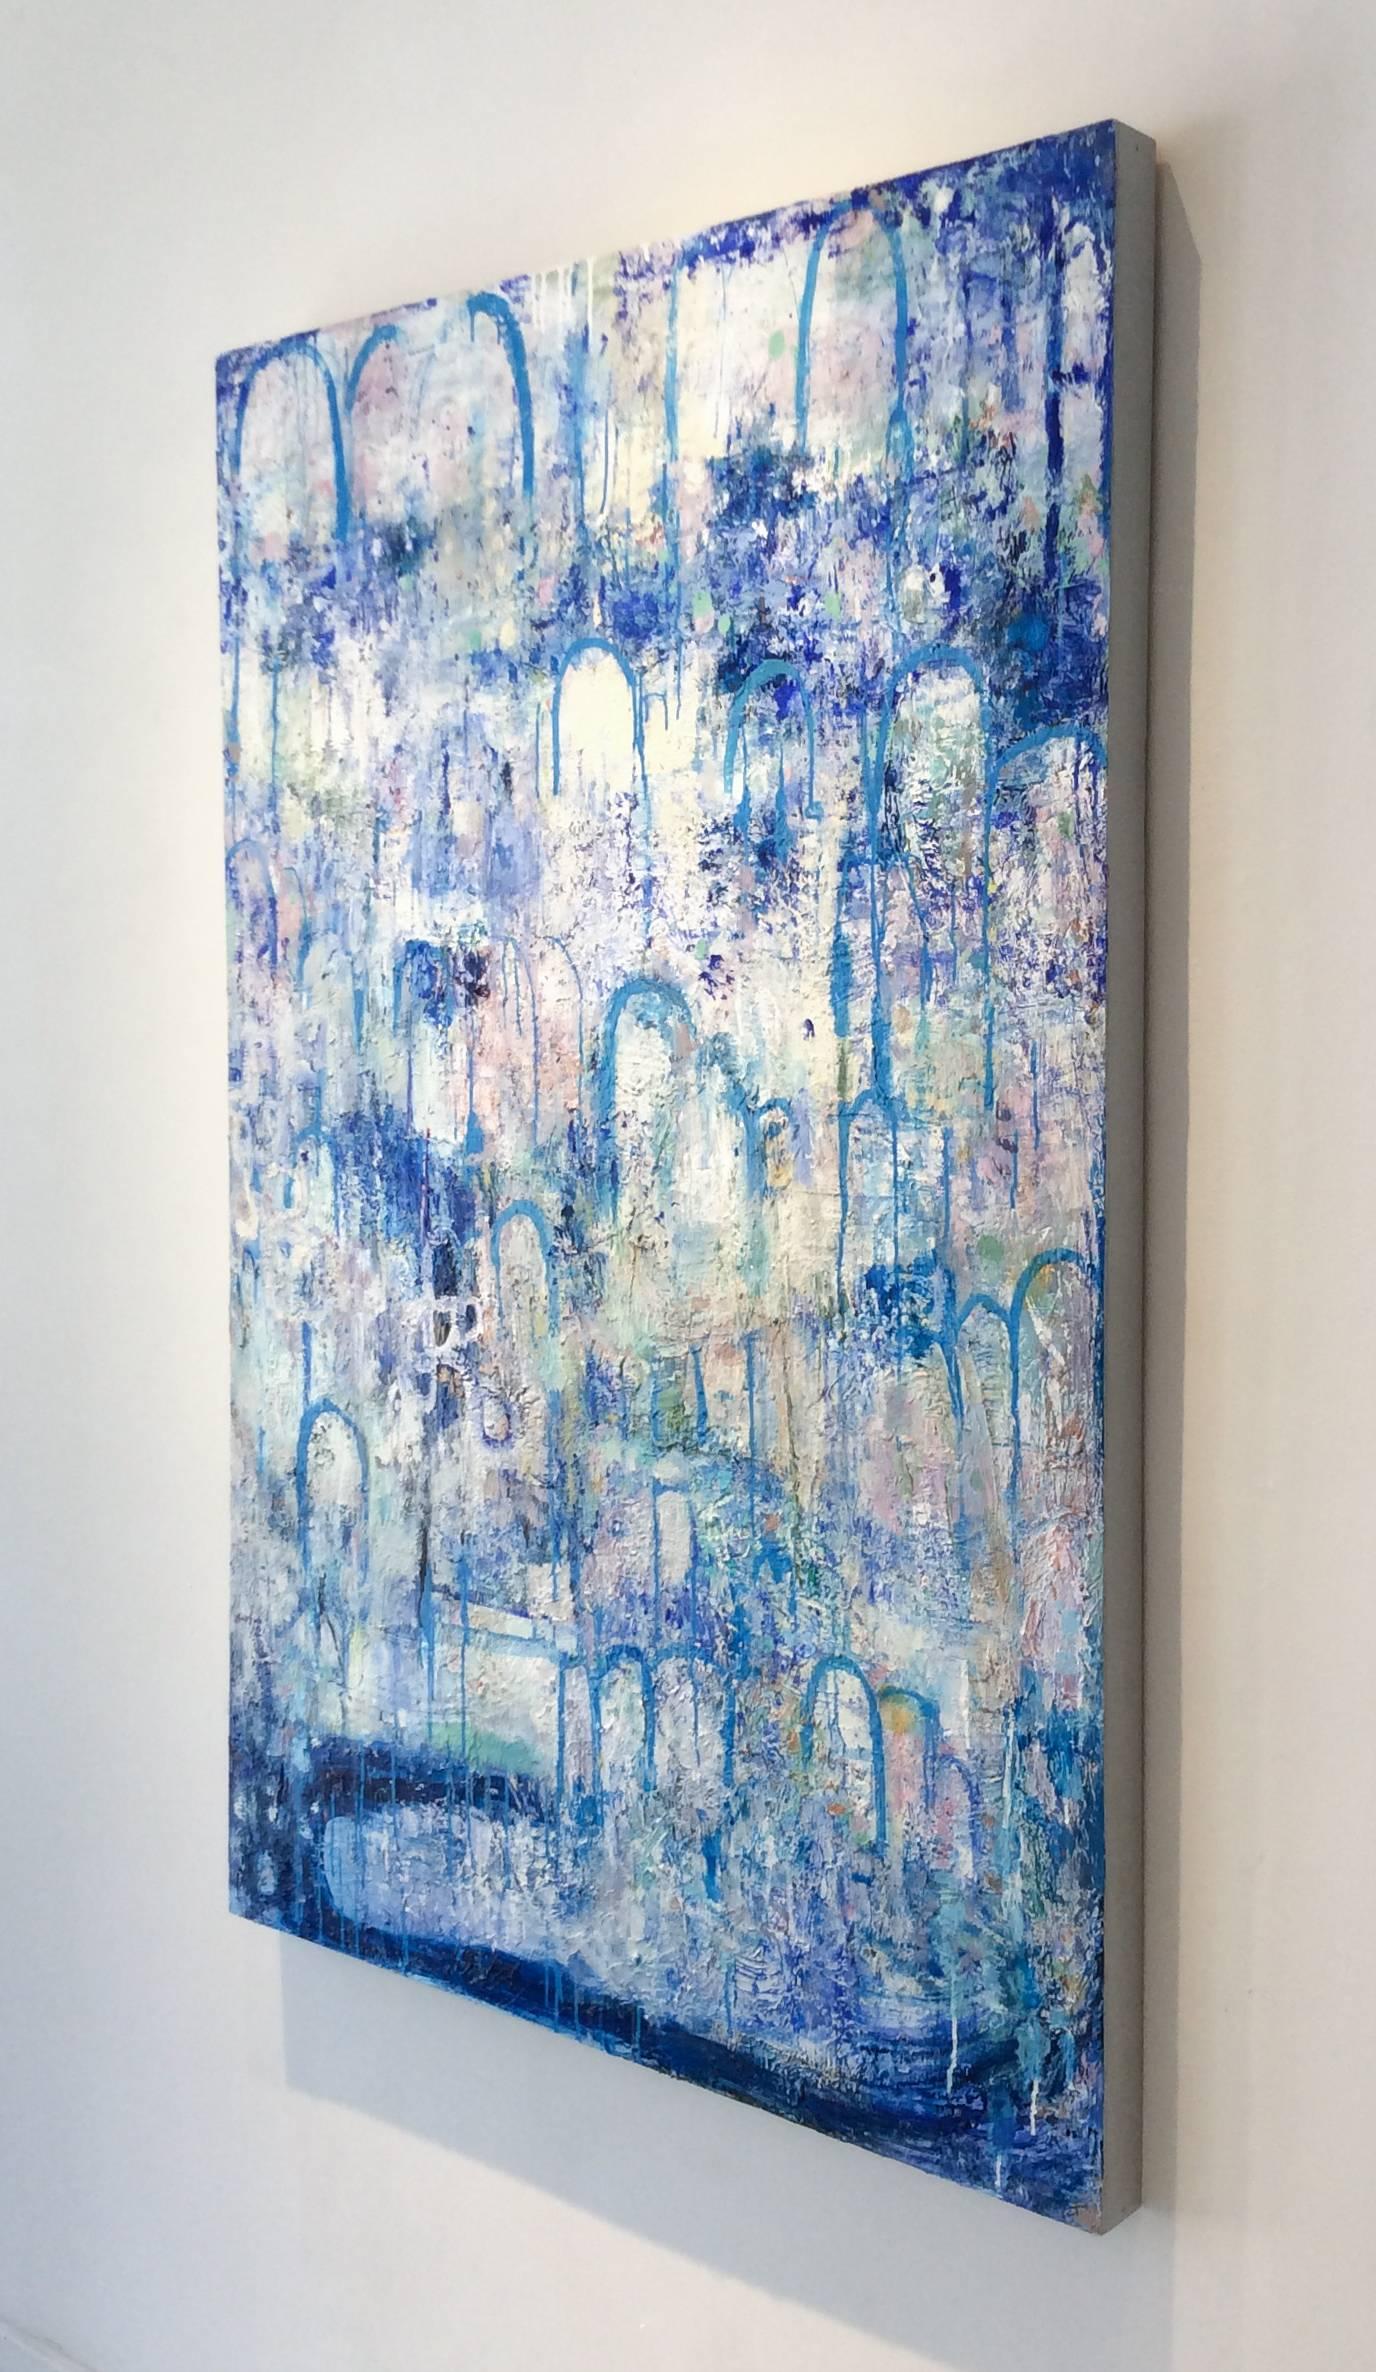 Hydrologie (zeitgenössisches vertikales abstraktes Expressionistisches Gemälde, Blau & Weiß) (Grau), Landscape Painting, von Ragellah Rourke